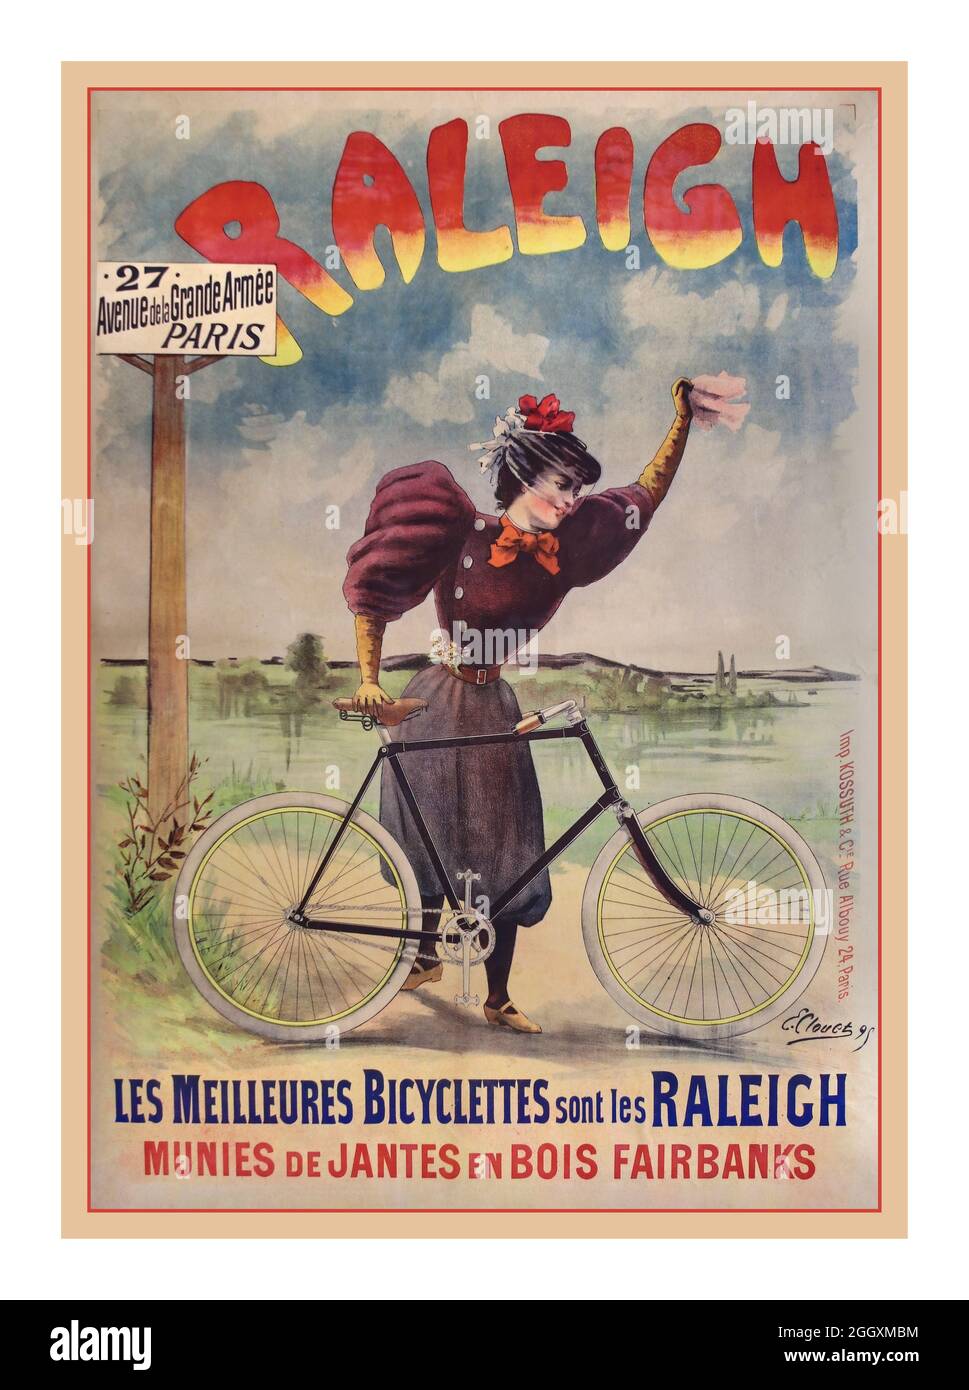 Poster francese per biciclette d’epoca 1890 per ‘Raleigh Bicycle 27 Avenue de la Grande Armee Paris / Les meilleures Bicyclettes sont Les Raleigh/ Munies de Jantes en Bois Fairbanks’ stampato da: J. Kossuth & Cie – 24, Rue Albouy, Parigi. Artista: Emile Clouet (Francese 19/XX secolo) Foto Stock